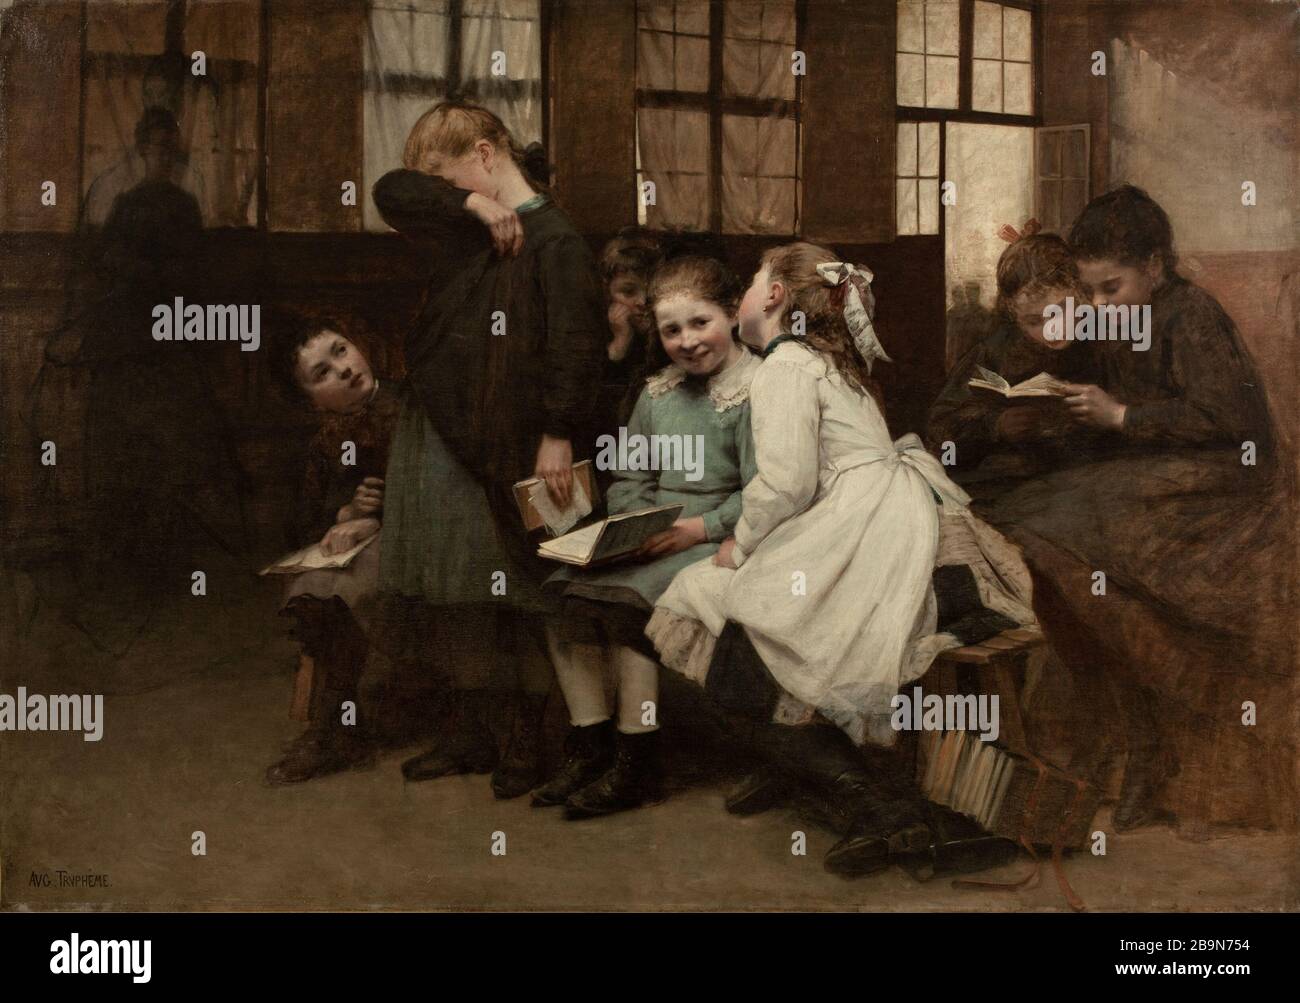 Den Auguste-Joseph Truphème (1836-1898) Behalten. "En remanue". Huile sur toile. Im Jahre 1888. Musée des Beaux-Arts de la Ville de Paris, Petit Palais. Stockfoto